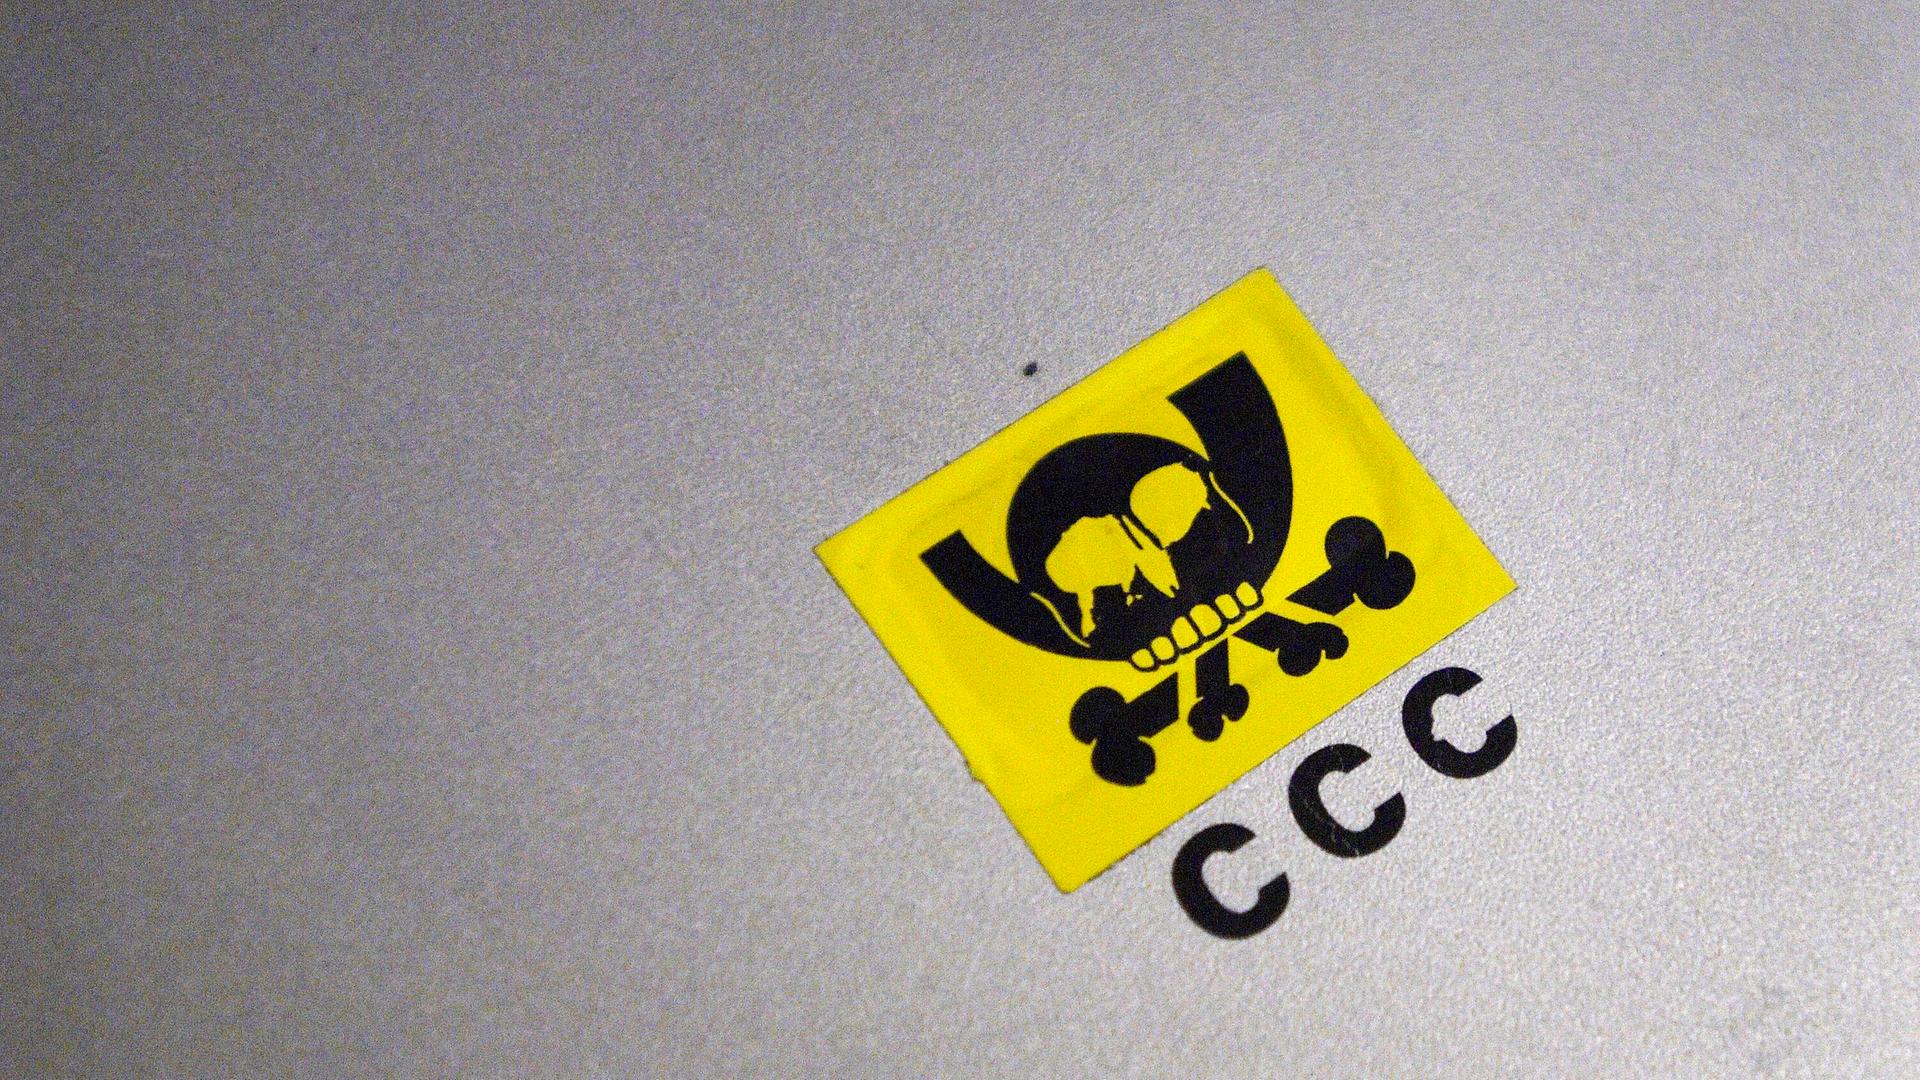 CHAOS COMPUTERCLUB: Verfremdetes Logo der Deutschen Post